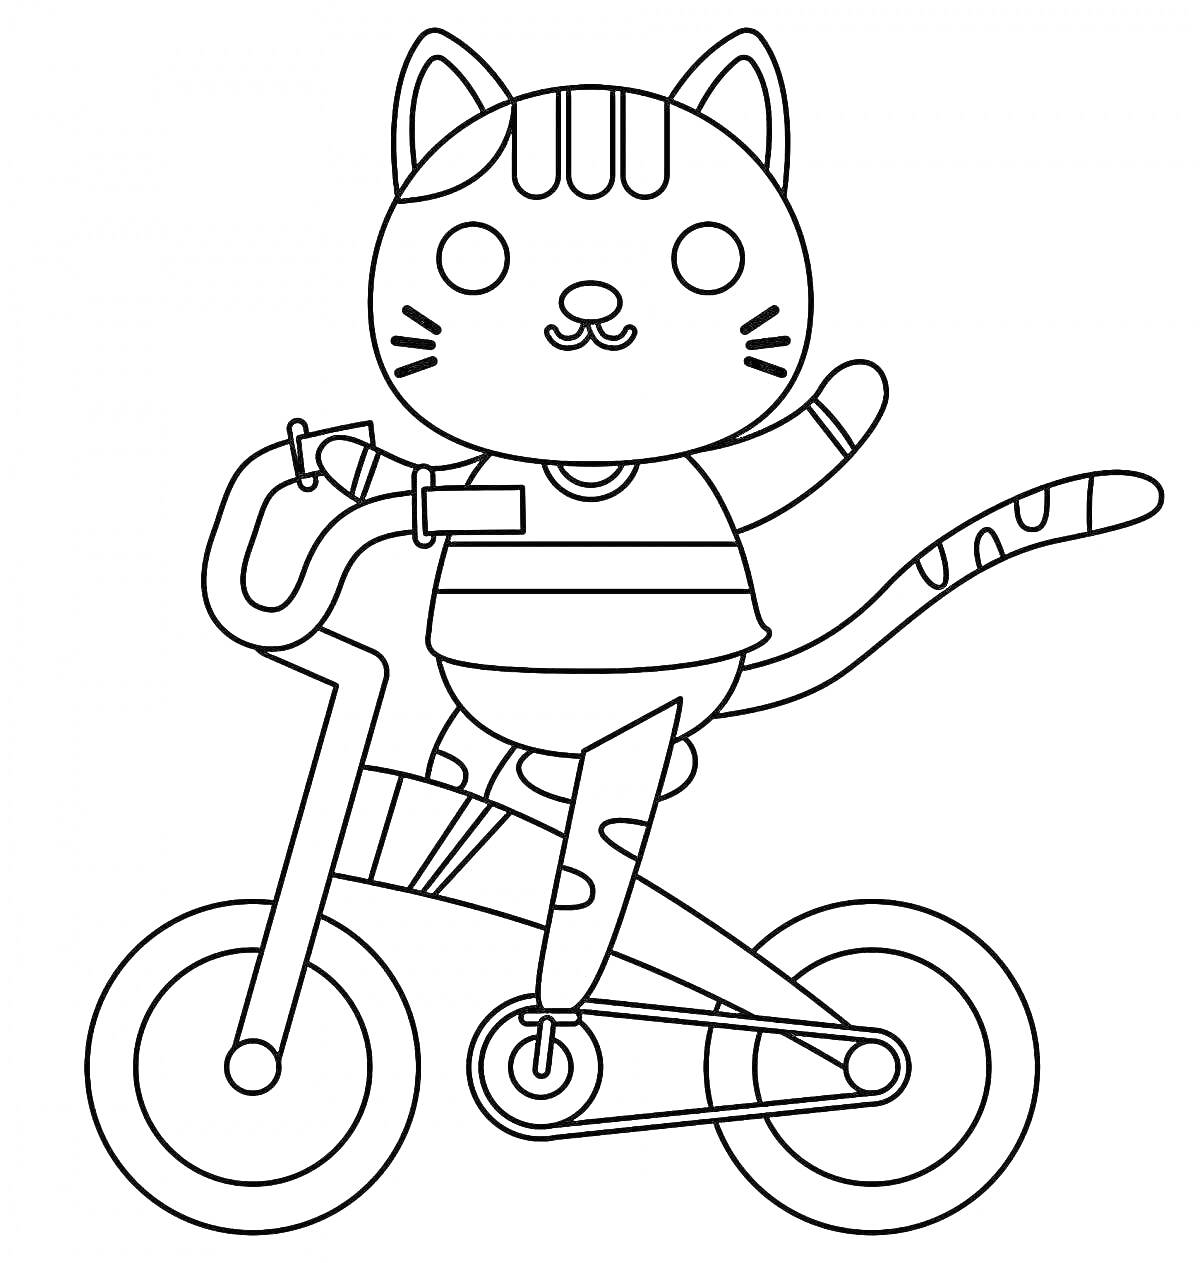 Раскраска Котенок Бубу на велосипеде с поднятой лапой